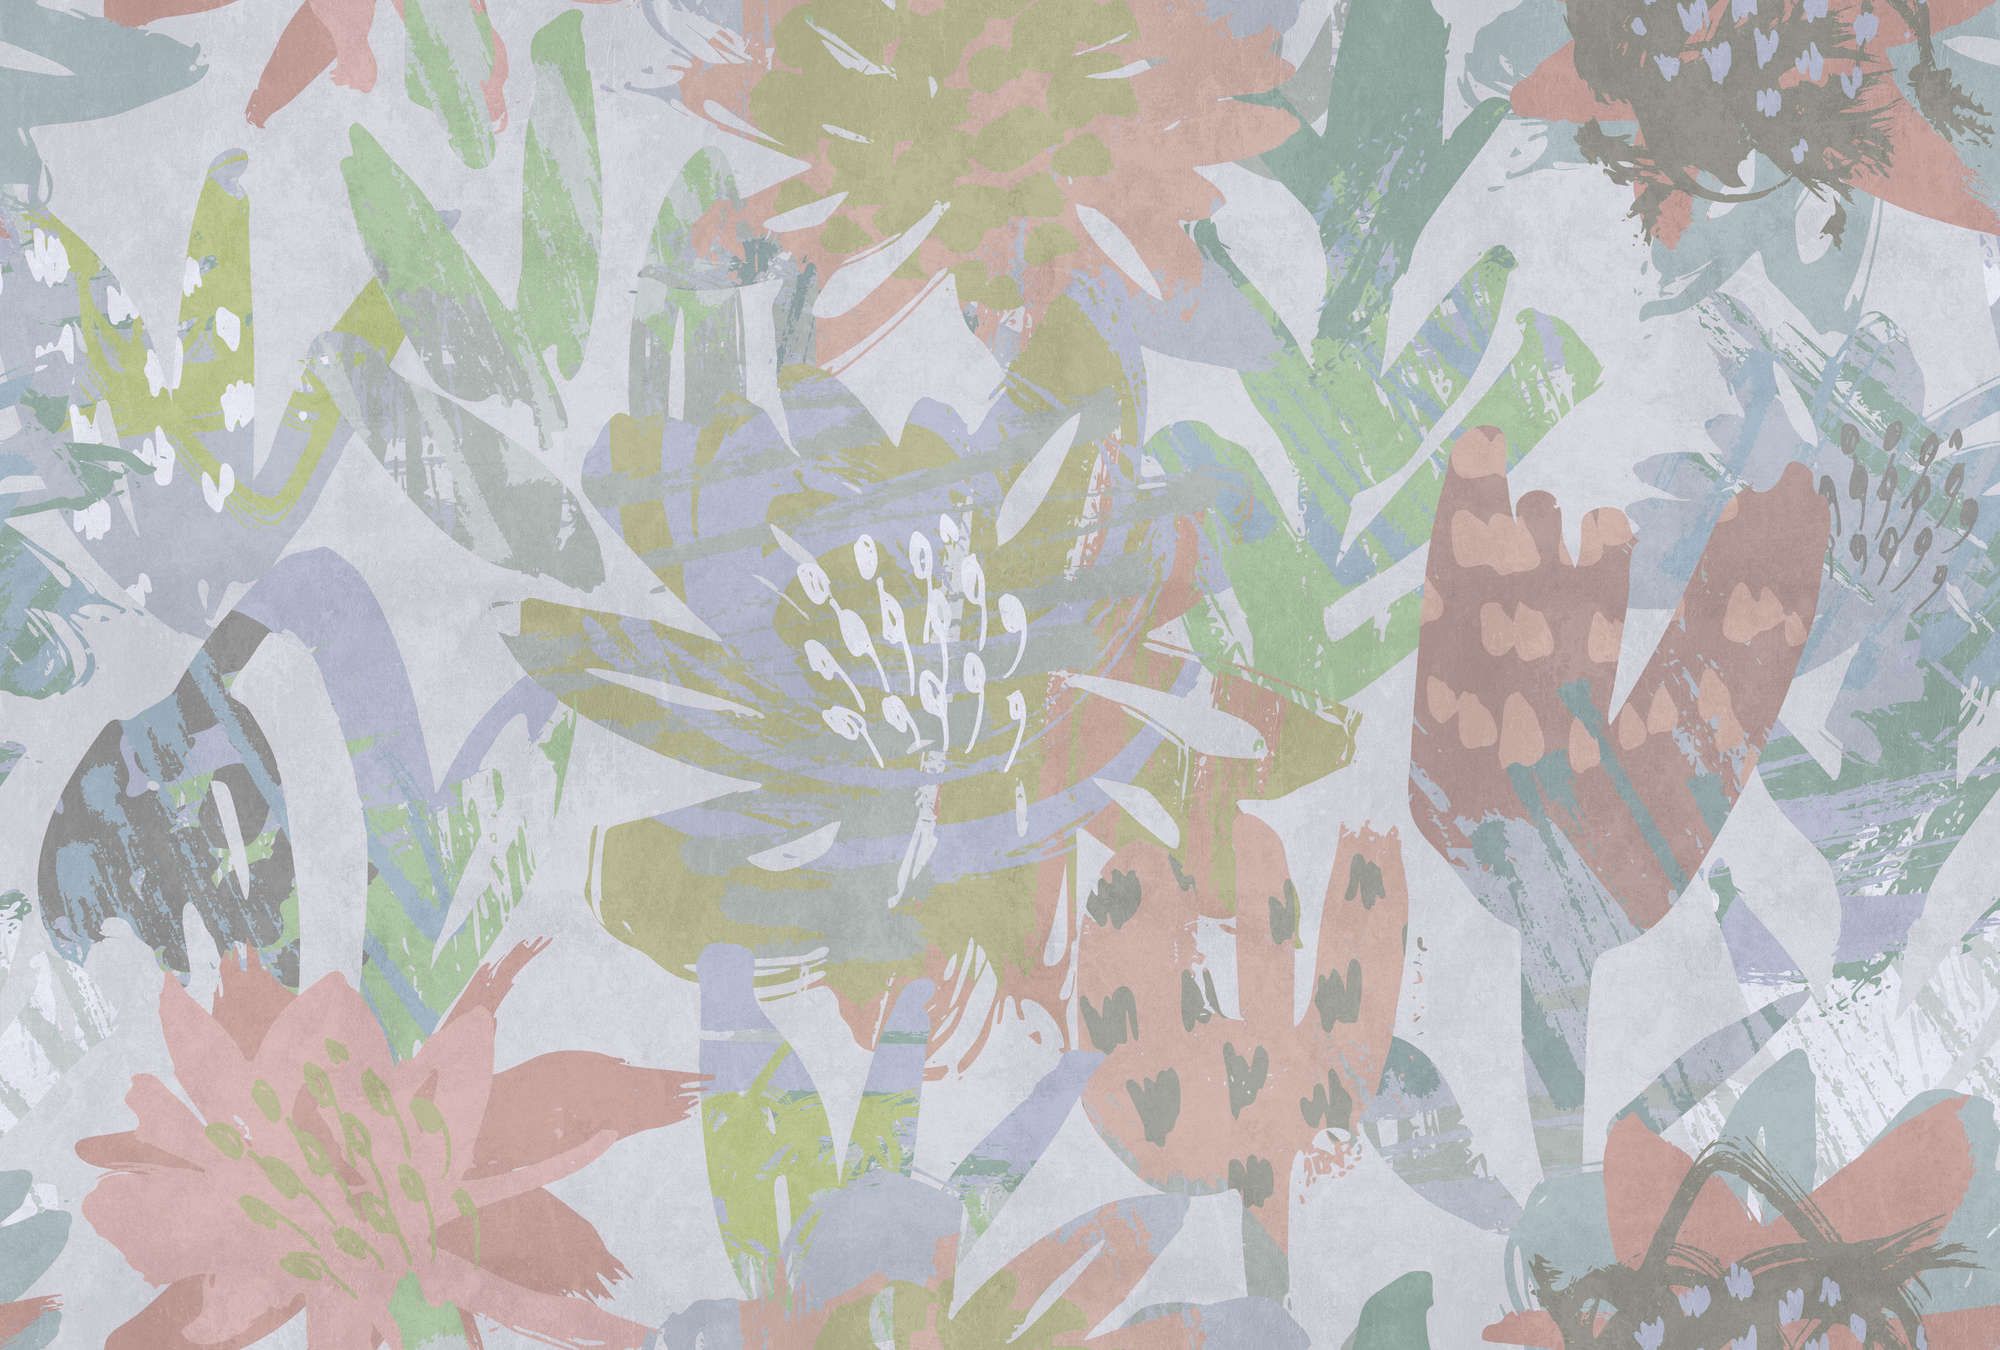             Fototapete »sophia« - Buntes Blumenmuster auf Betonputzstruktur – Glattes, leicht perlmutt-schimmerndes Vlies
        